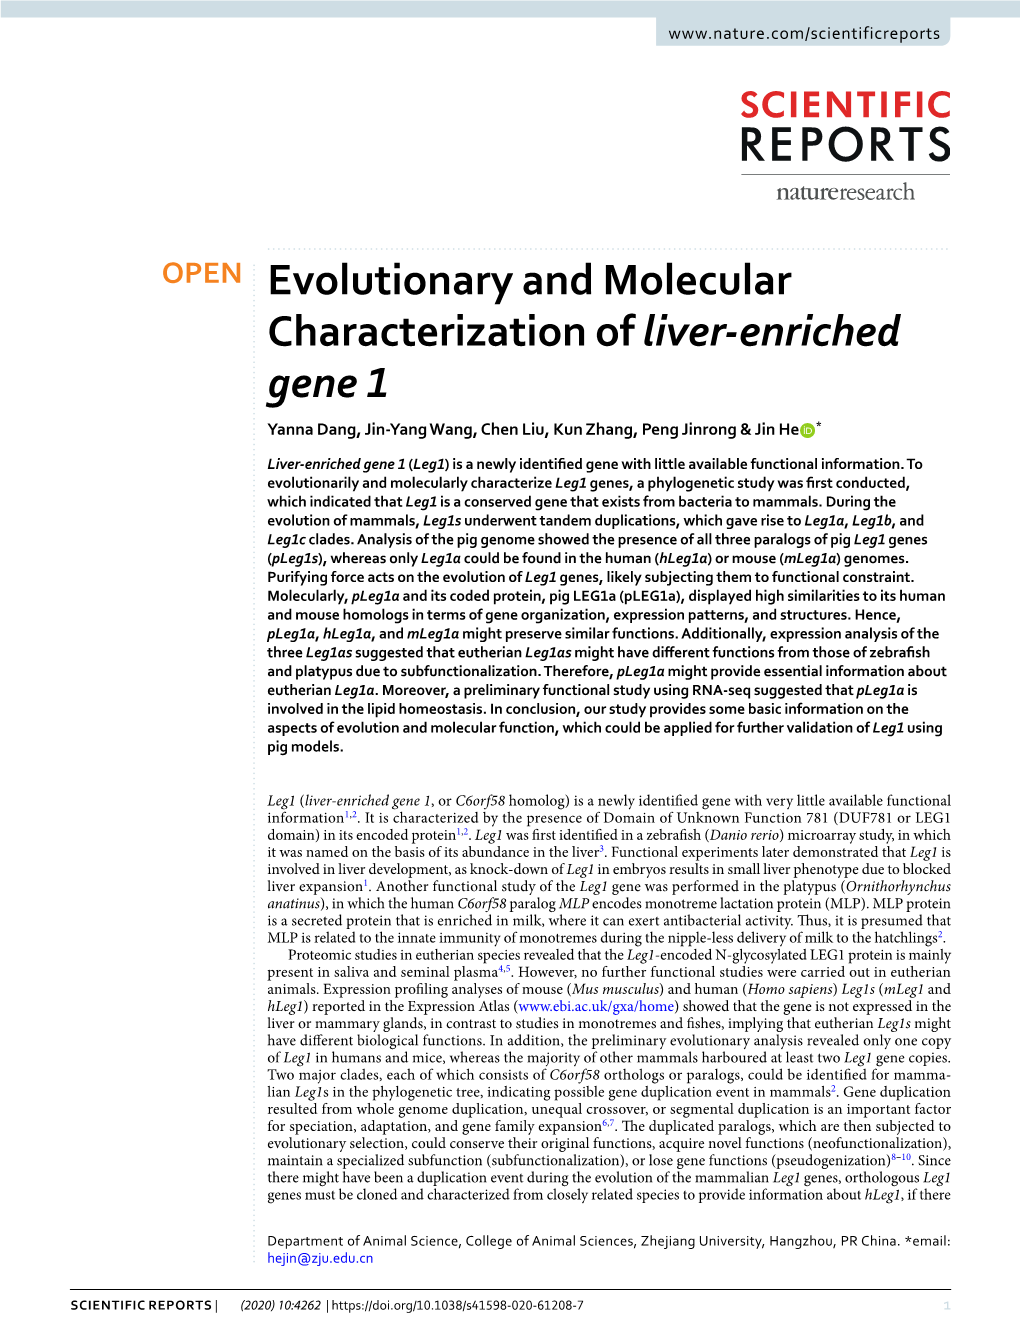 Evolutionary and Molecular Characterization of Liver-Enriched Gene 1 Yanna Dang, Jin-Yang Wang, Chen Liu, Kun Zhang, Peng Jinrong & Jin He *